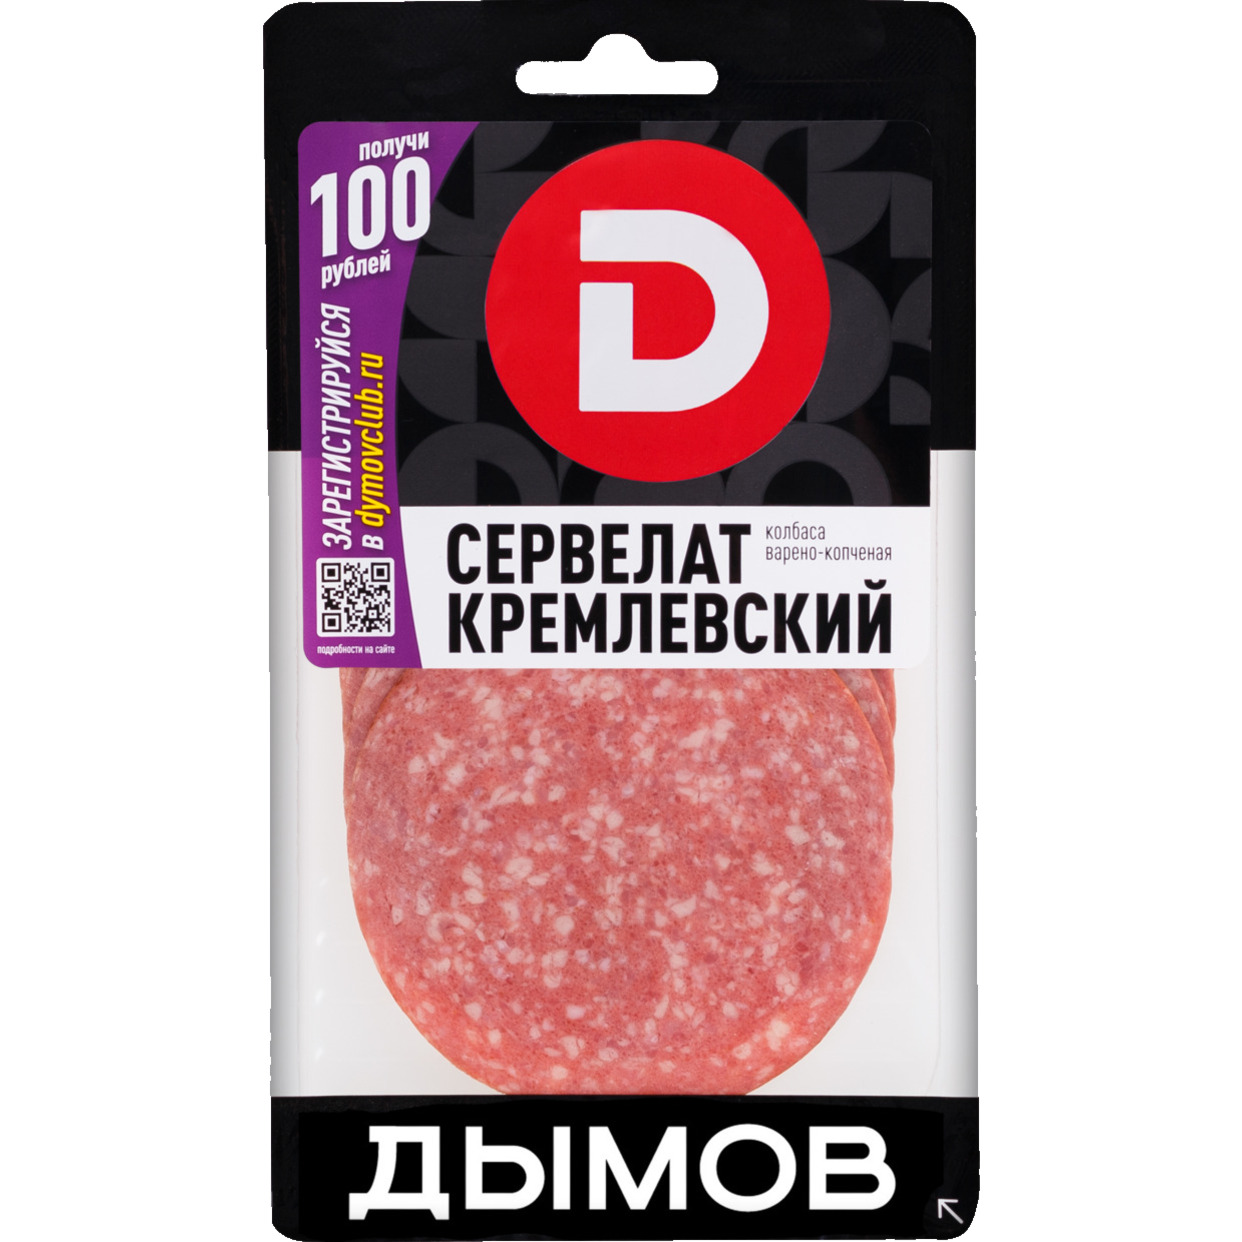 Мясной продукт. Изделие колбасное варено-копченое колбаса Сервелат "Кремлевский" нарезка 200г по акции в Пятерочке